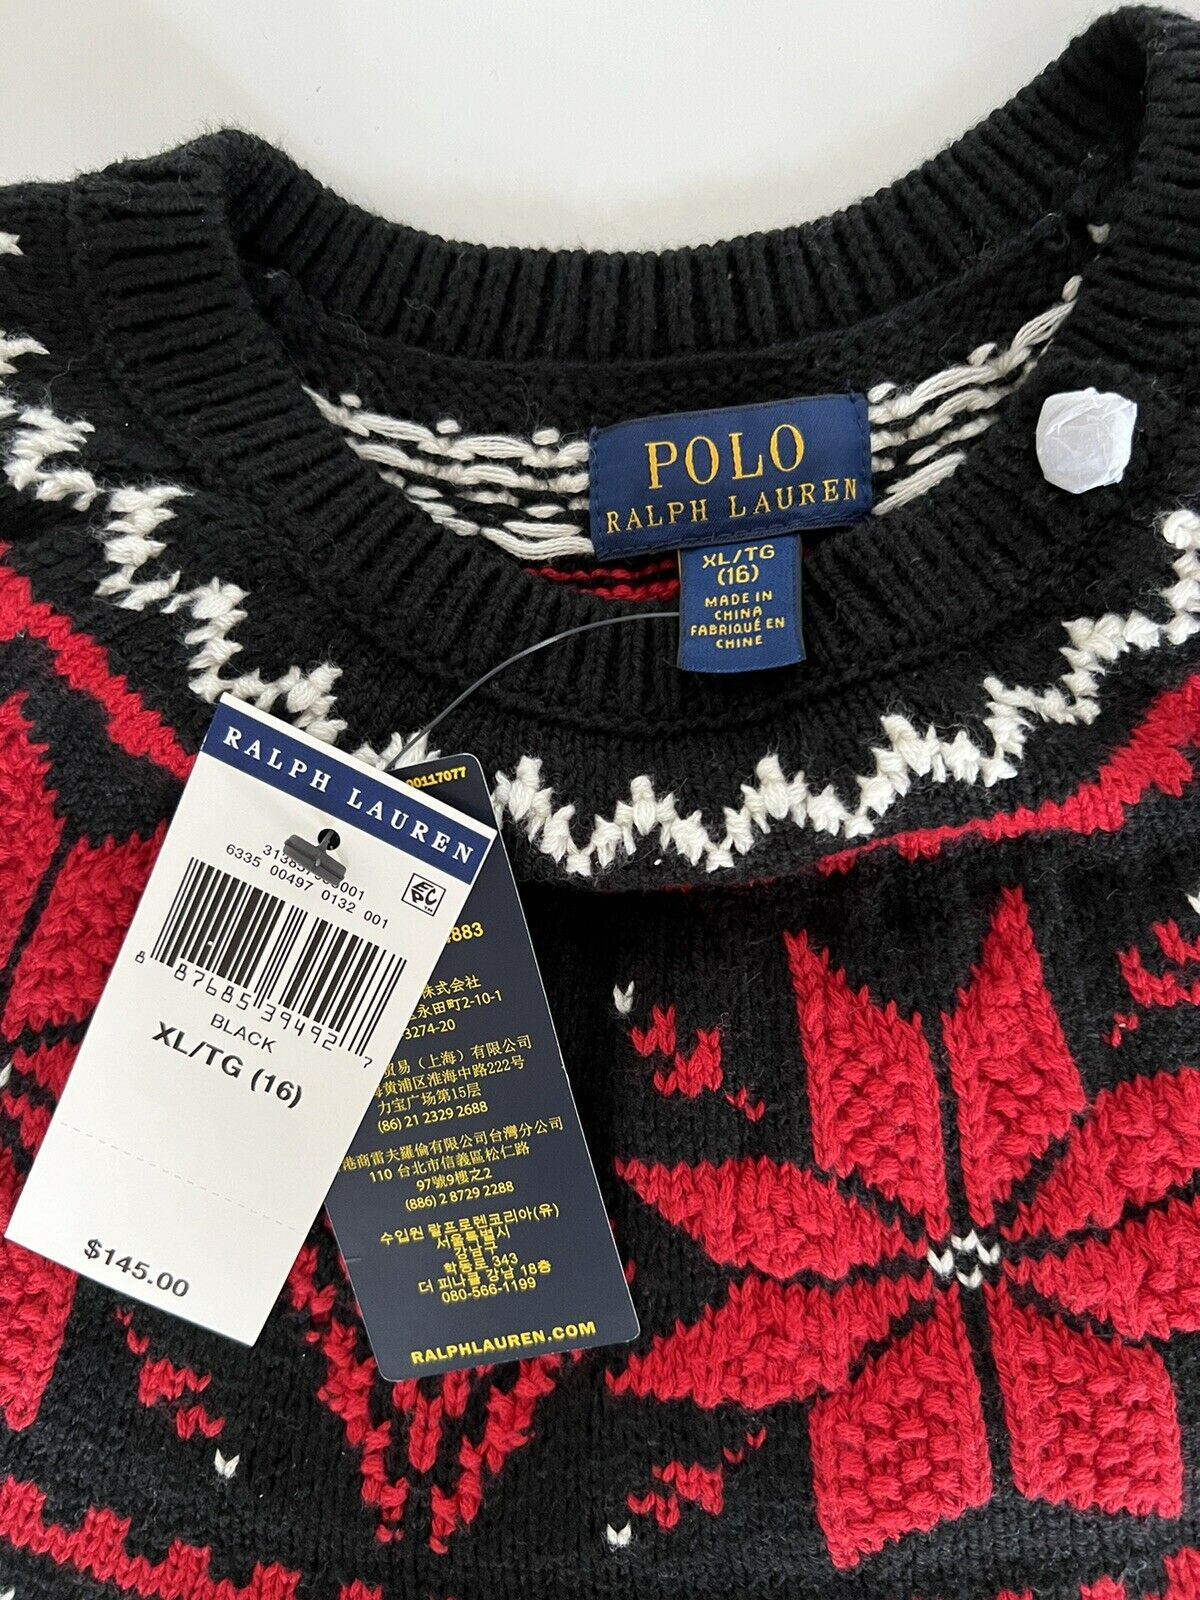 СЗТ $145 Polo Ralph Lauren для девочек, черный хлопковый свитер Let it Snow, размер XL (16)